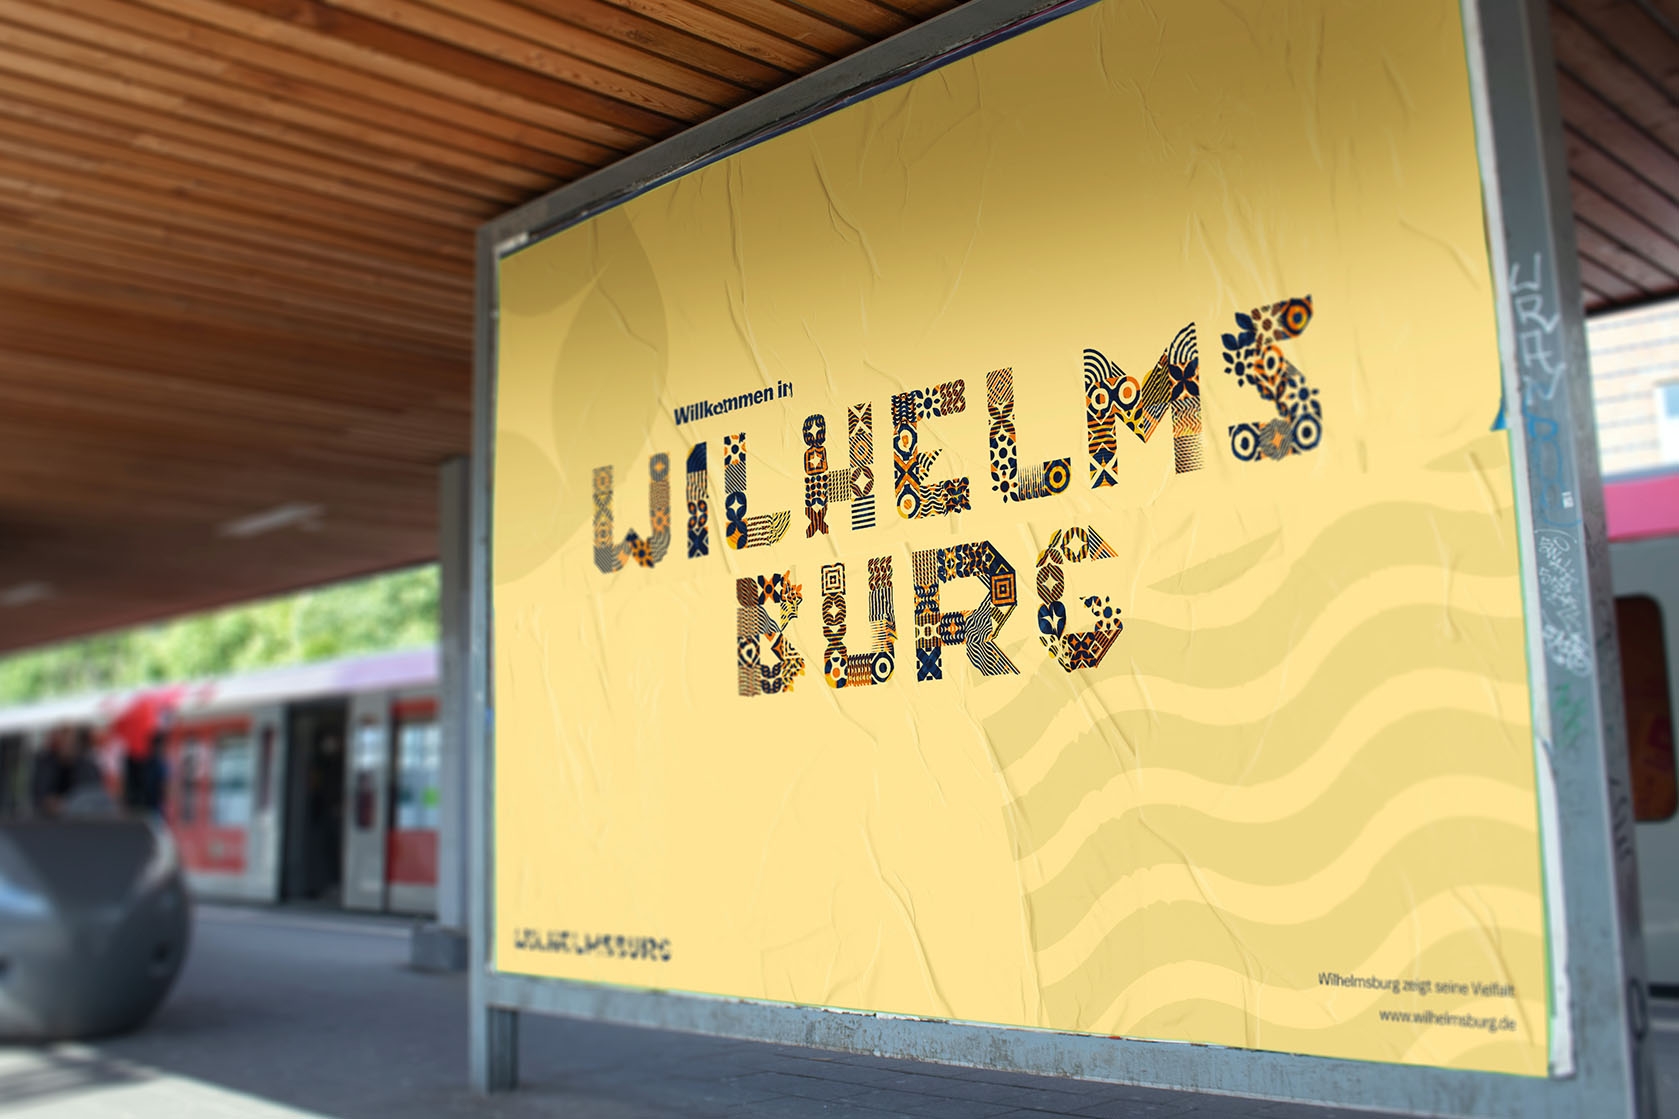 Willkommen in wilhelmsburg plakat am bahnsteig